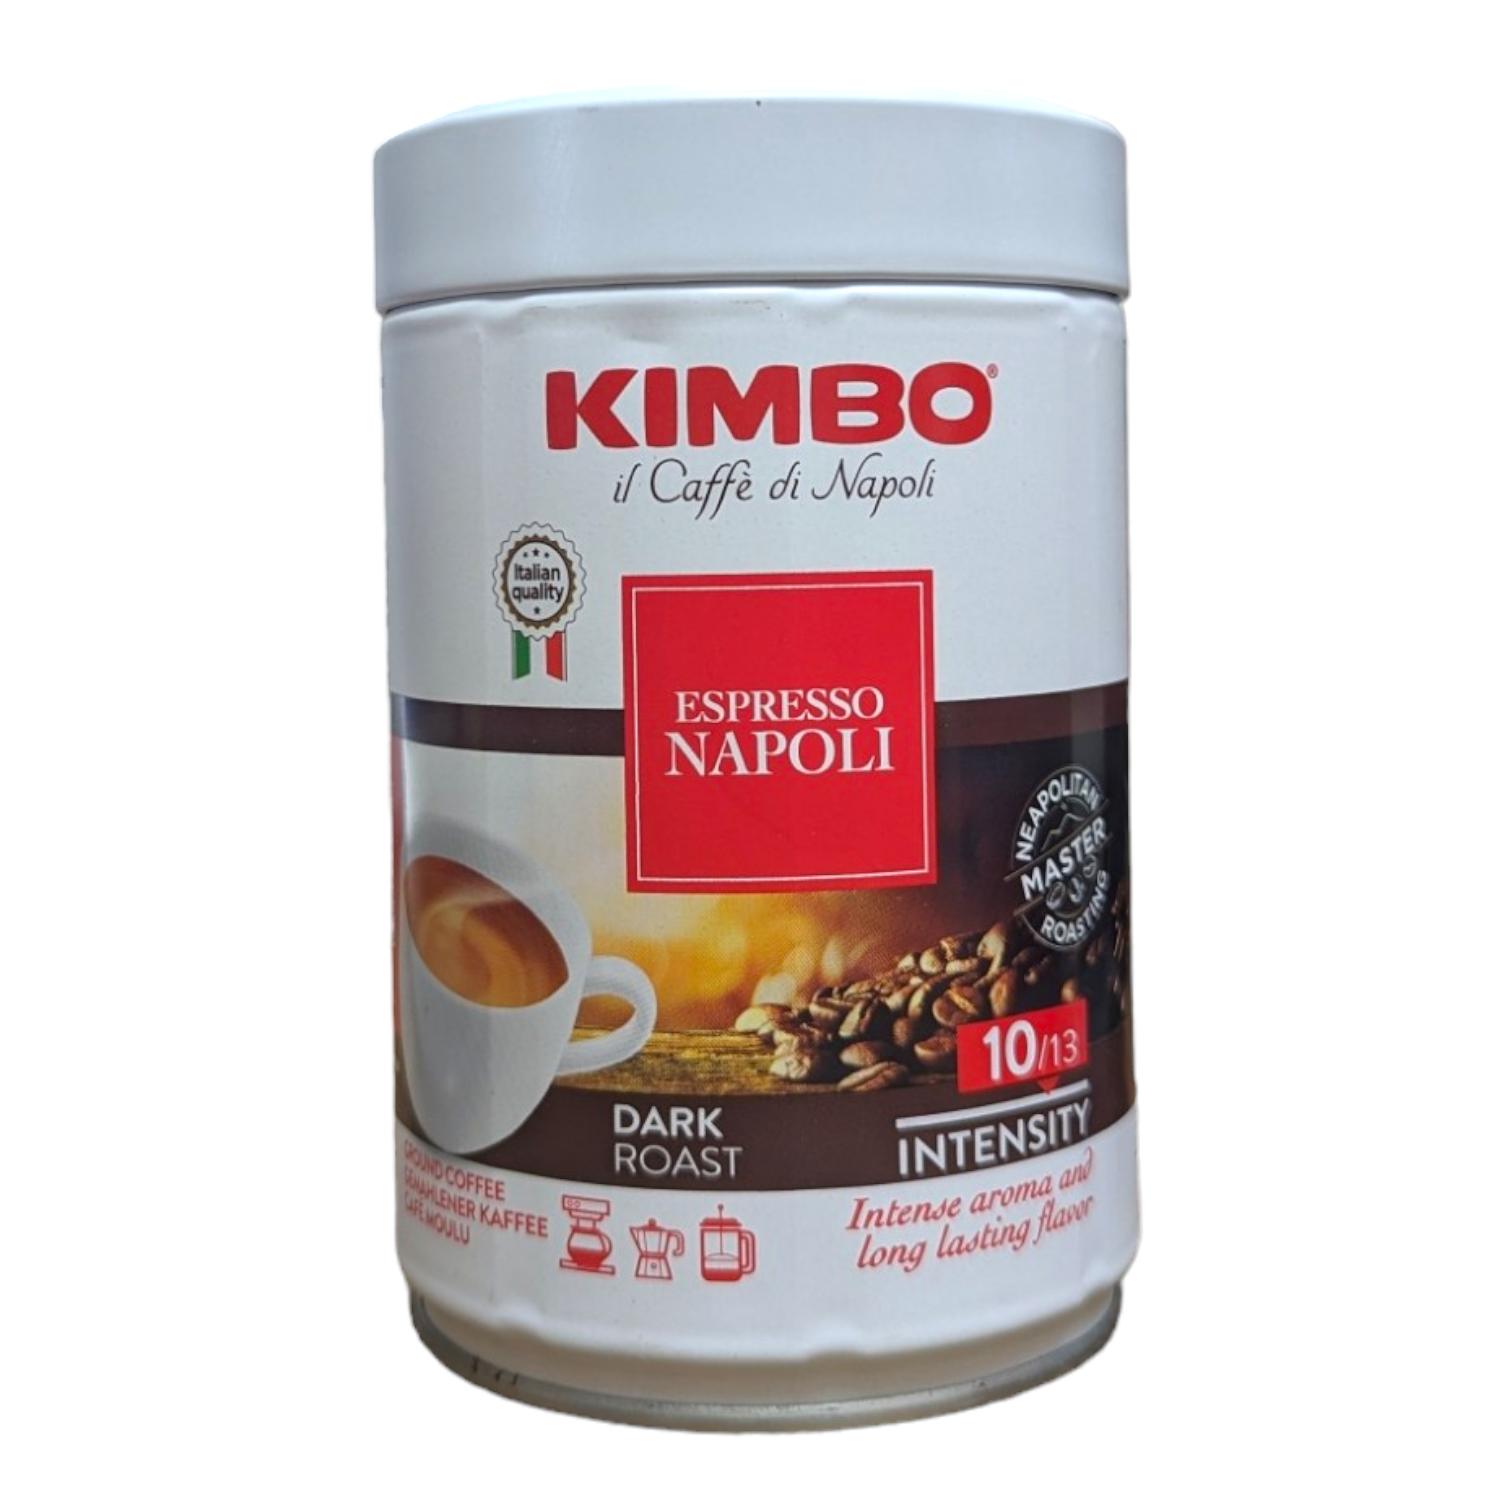 Kimbo Ground Coffee Napoli/Napoletano 250g Tin – Italia Solutions UK